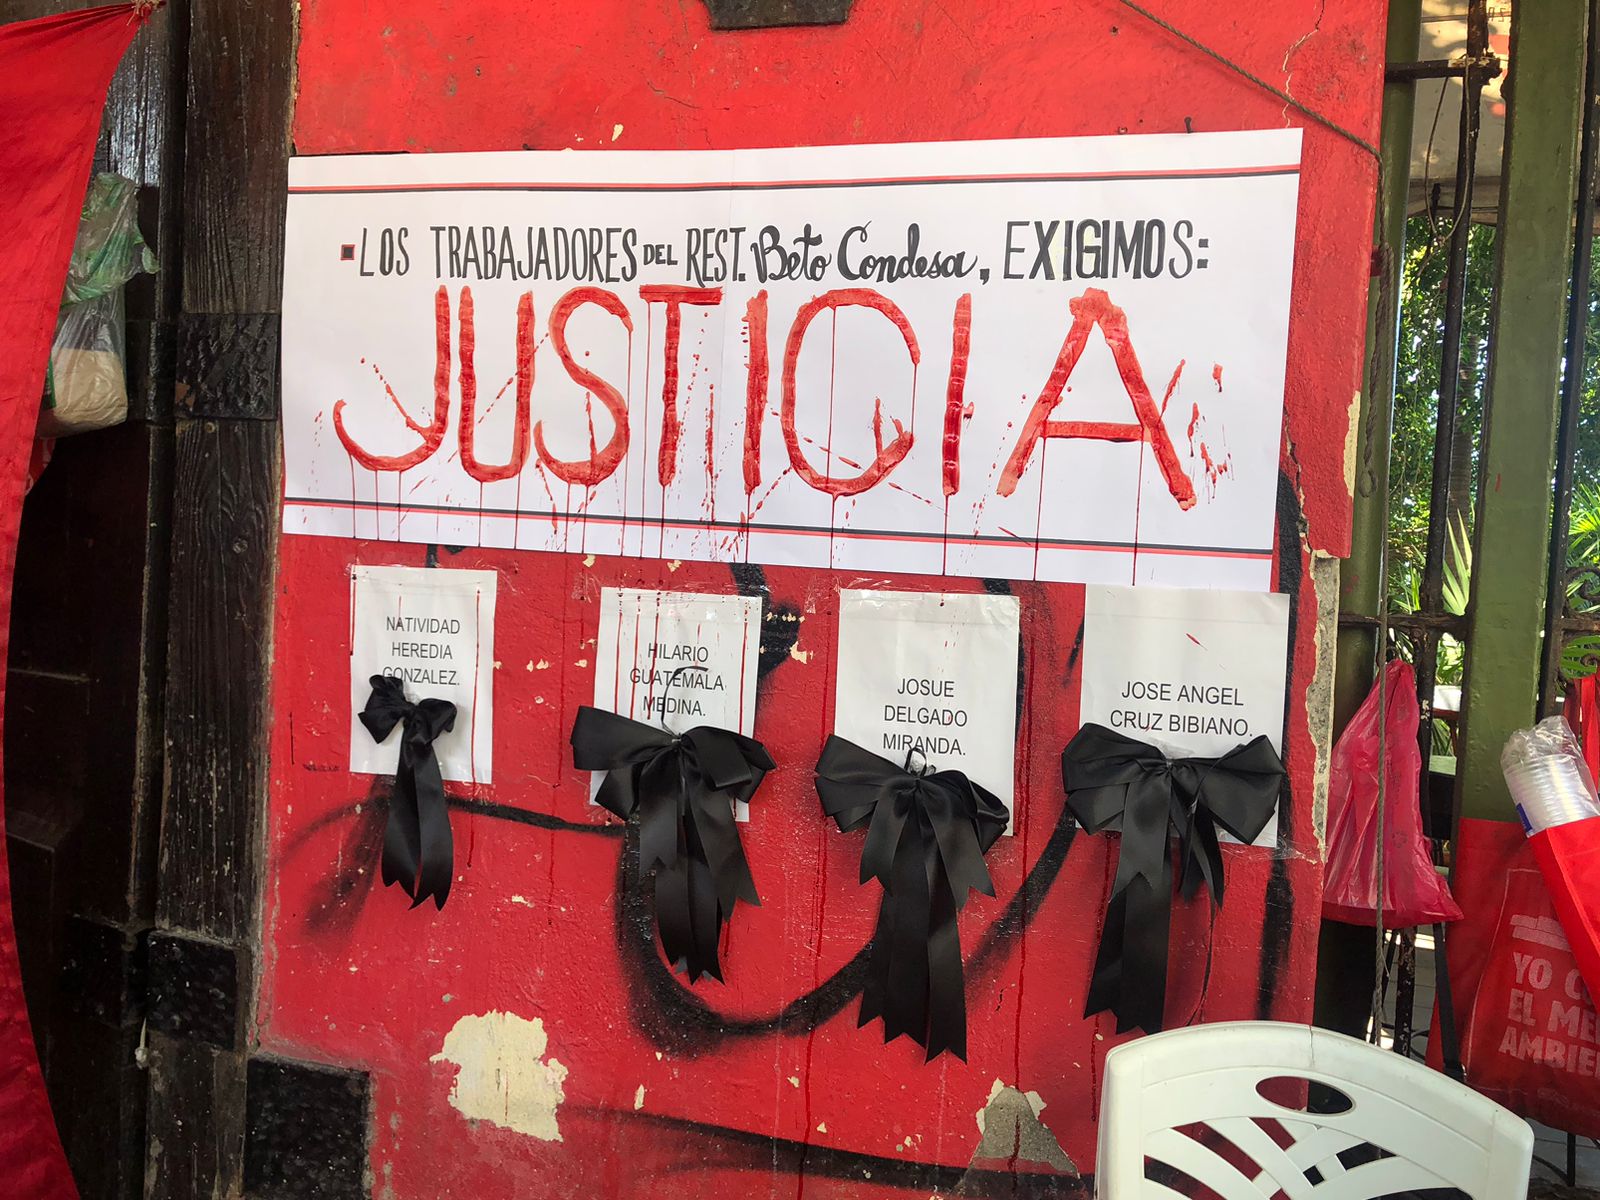 Exigen justicia laboral trabajadores del restaurante “Beto Condesa” en Acapulco